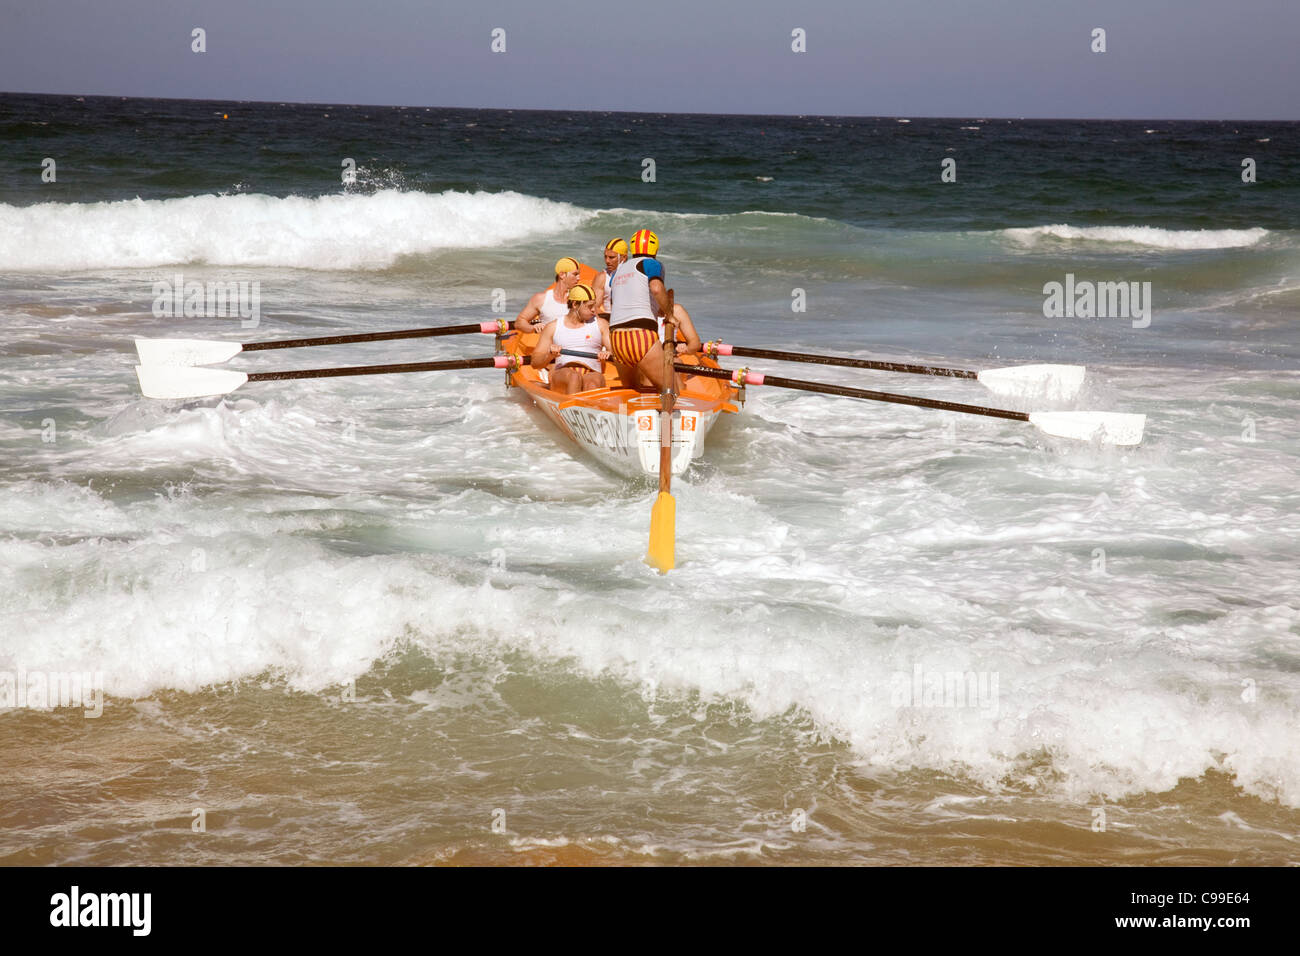 Besatzung eines traditionellen australischen Rettungsboots Surf-Rettungsboot, das in einem Rennen vor Newport Beach, Sydney, Australien rudert Stockfoto